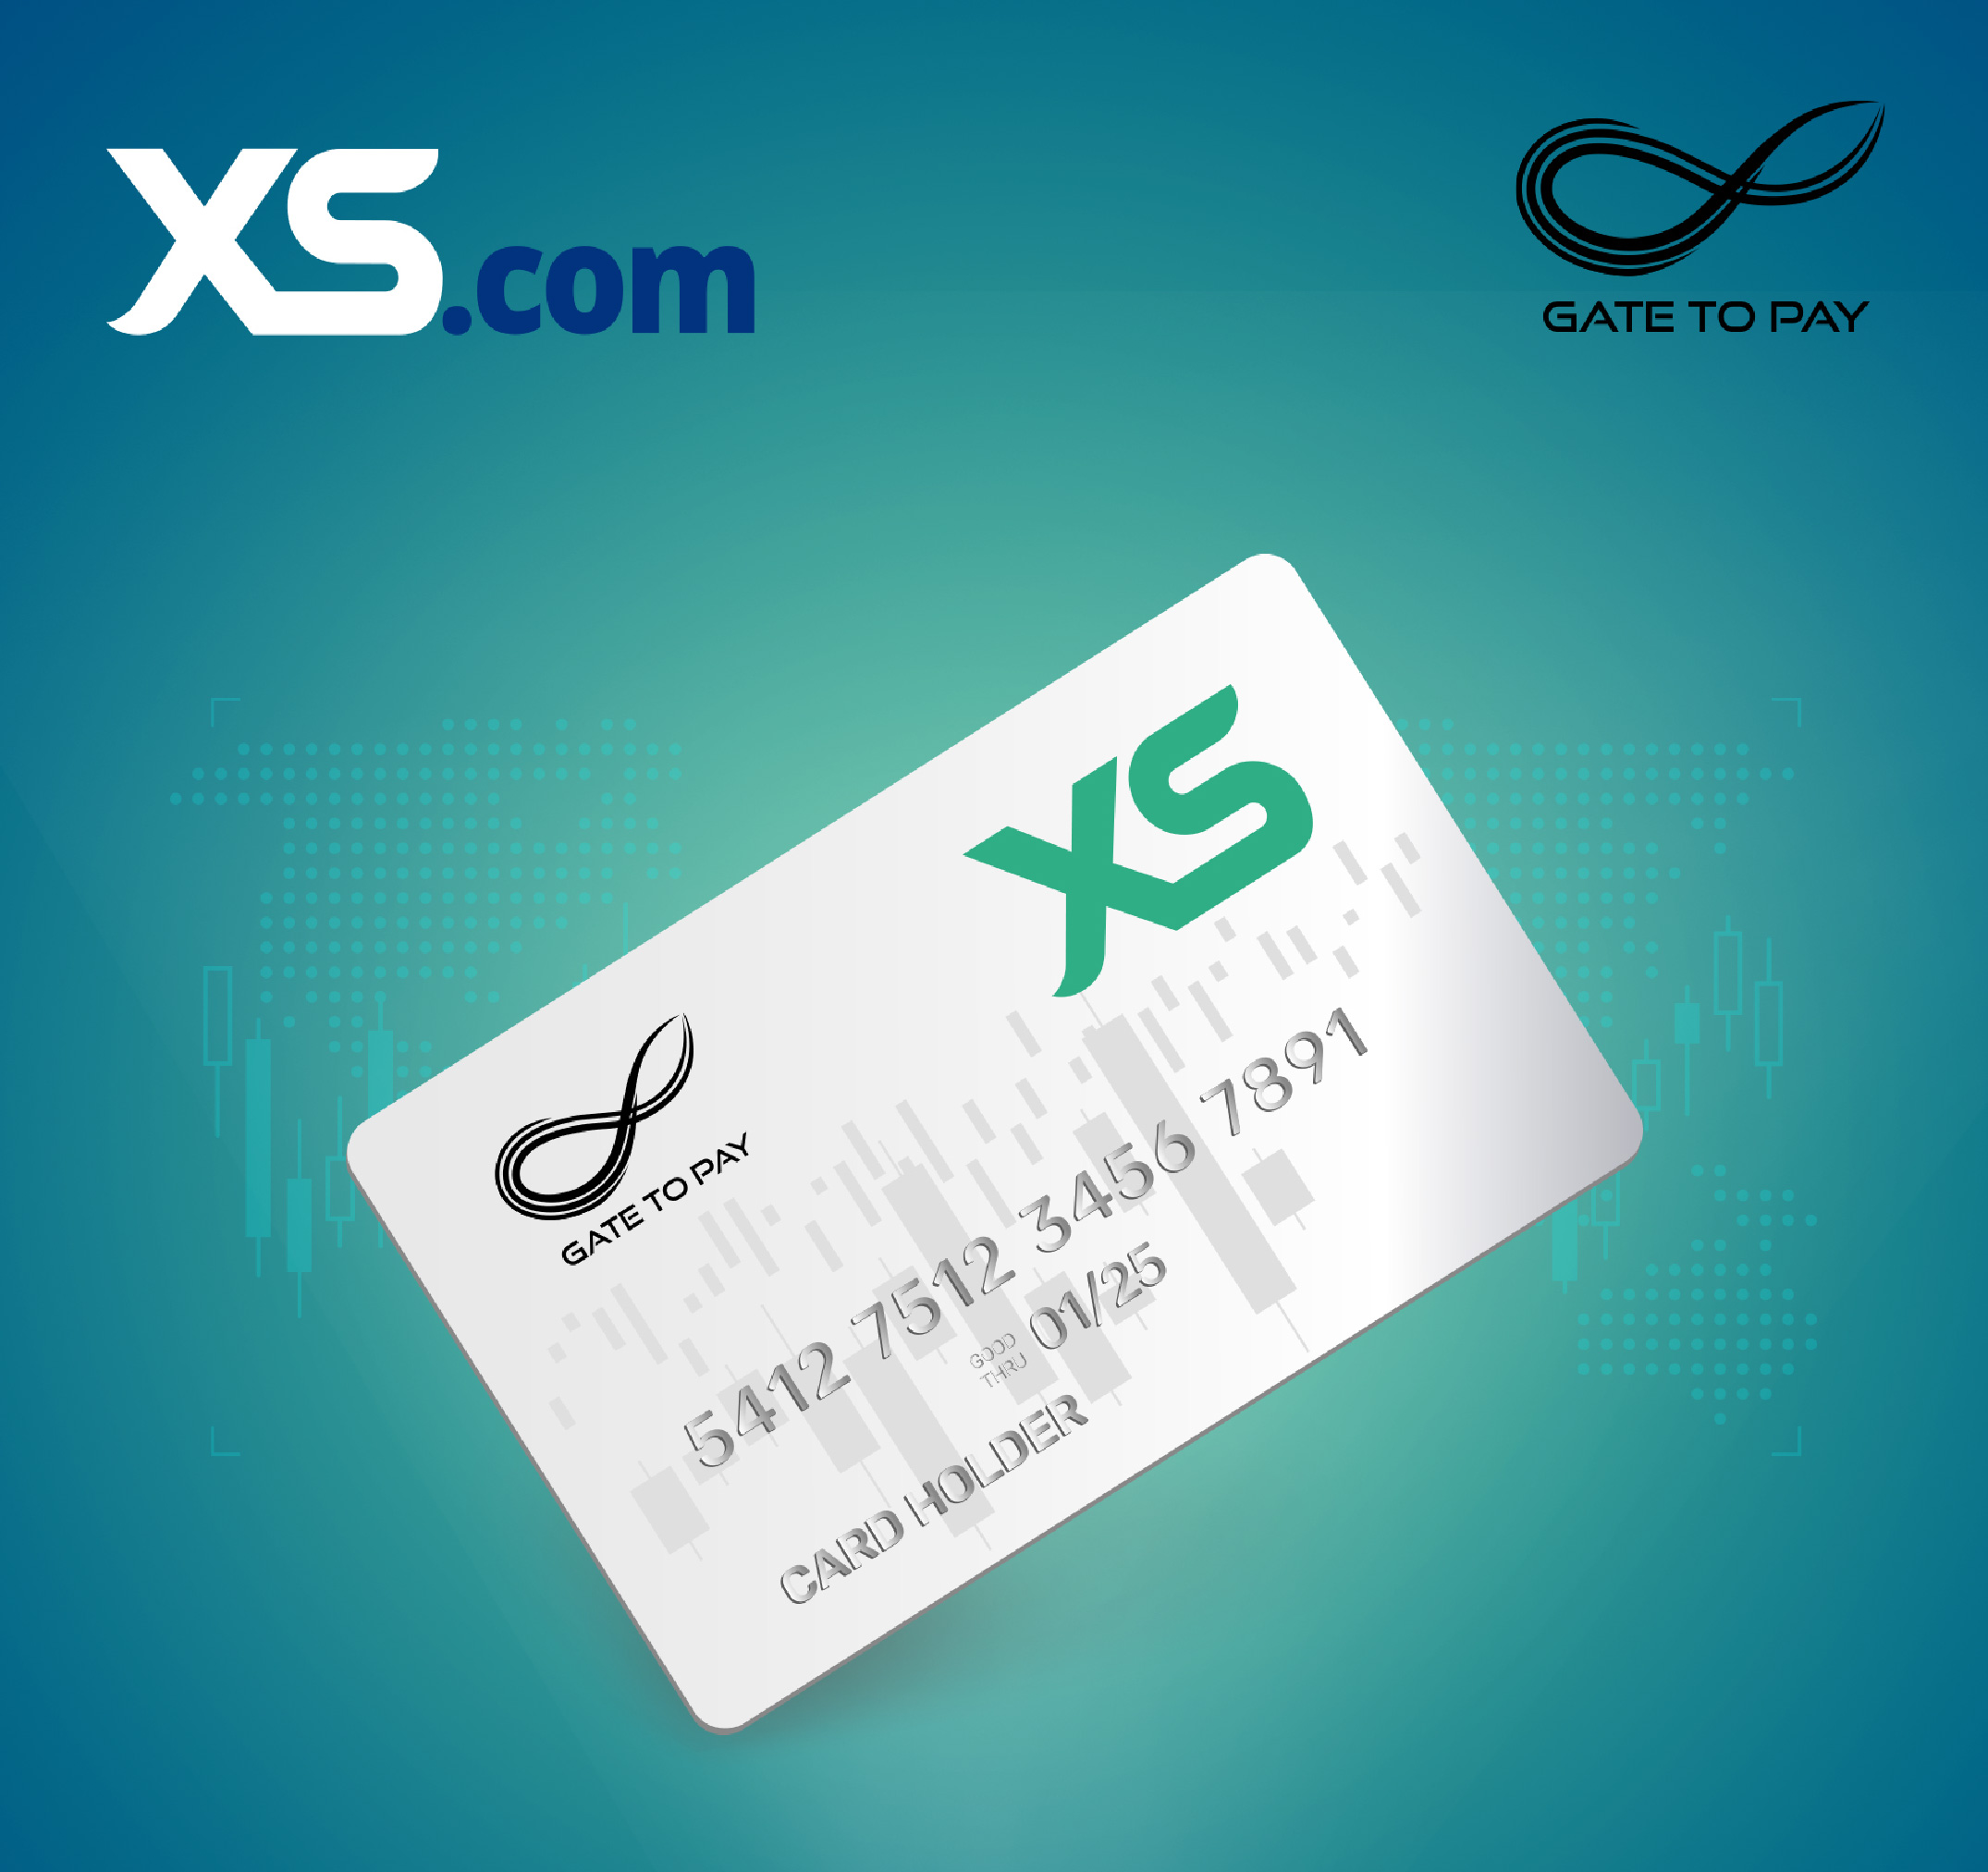 XS.com apresenta o XS Prepaid Mastercard integrado ao aplicativo móvel “XS Cards”